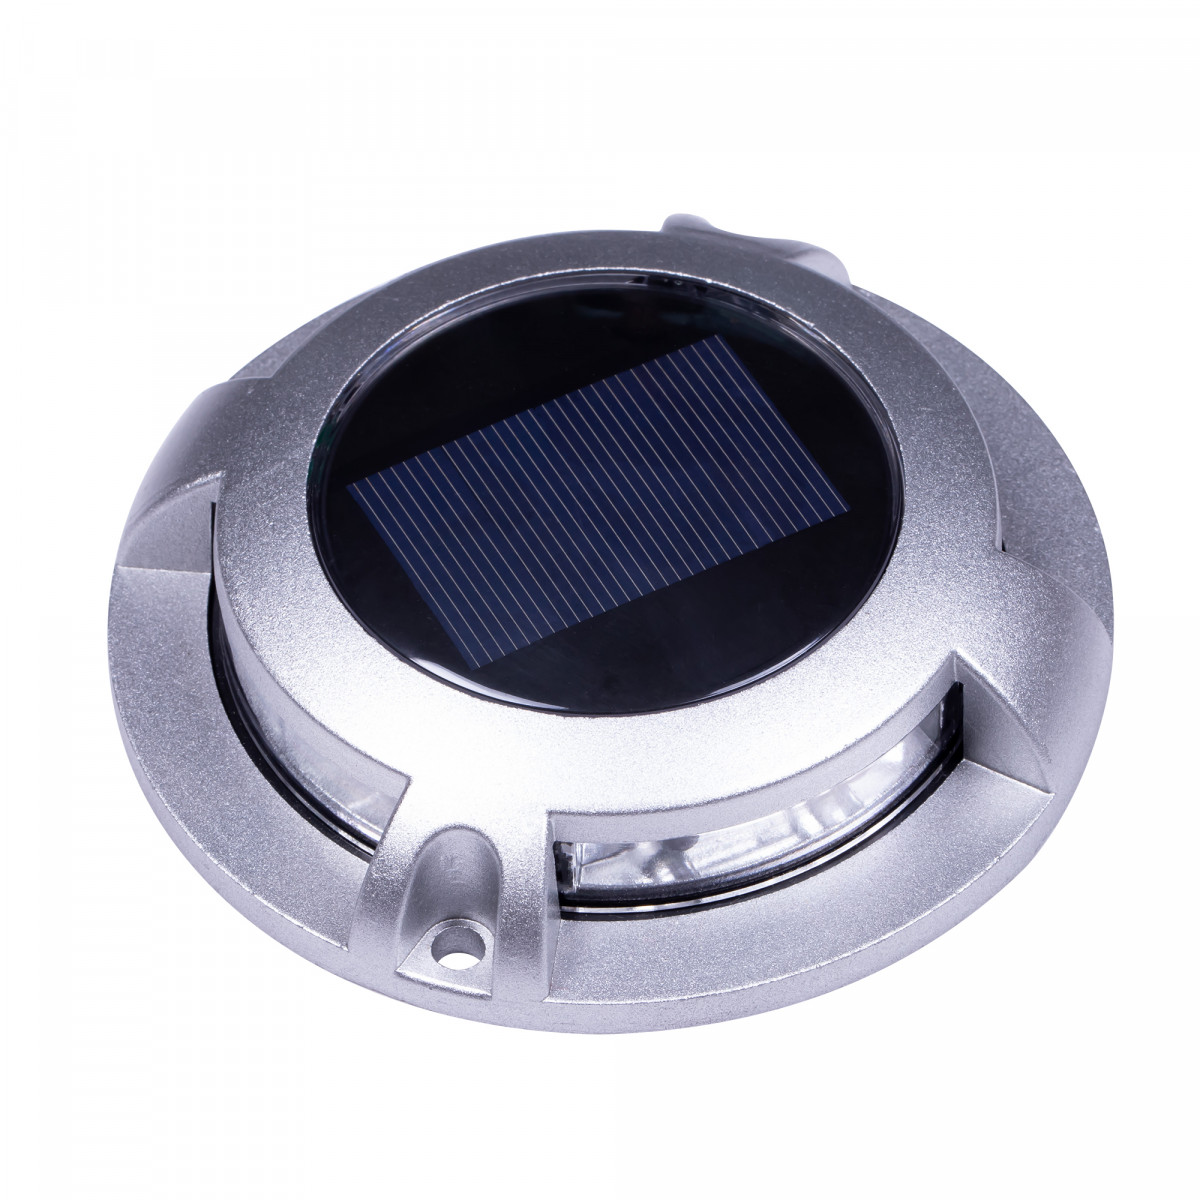 spot au sol - Solar LED Decklight - lampe solaire - spot à énergie solaire - Nostalux-Set-3, acier inoxydable